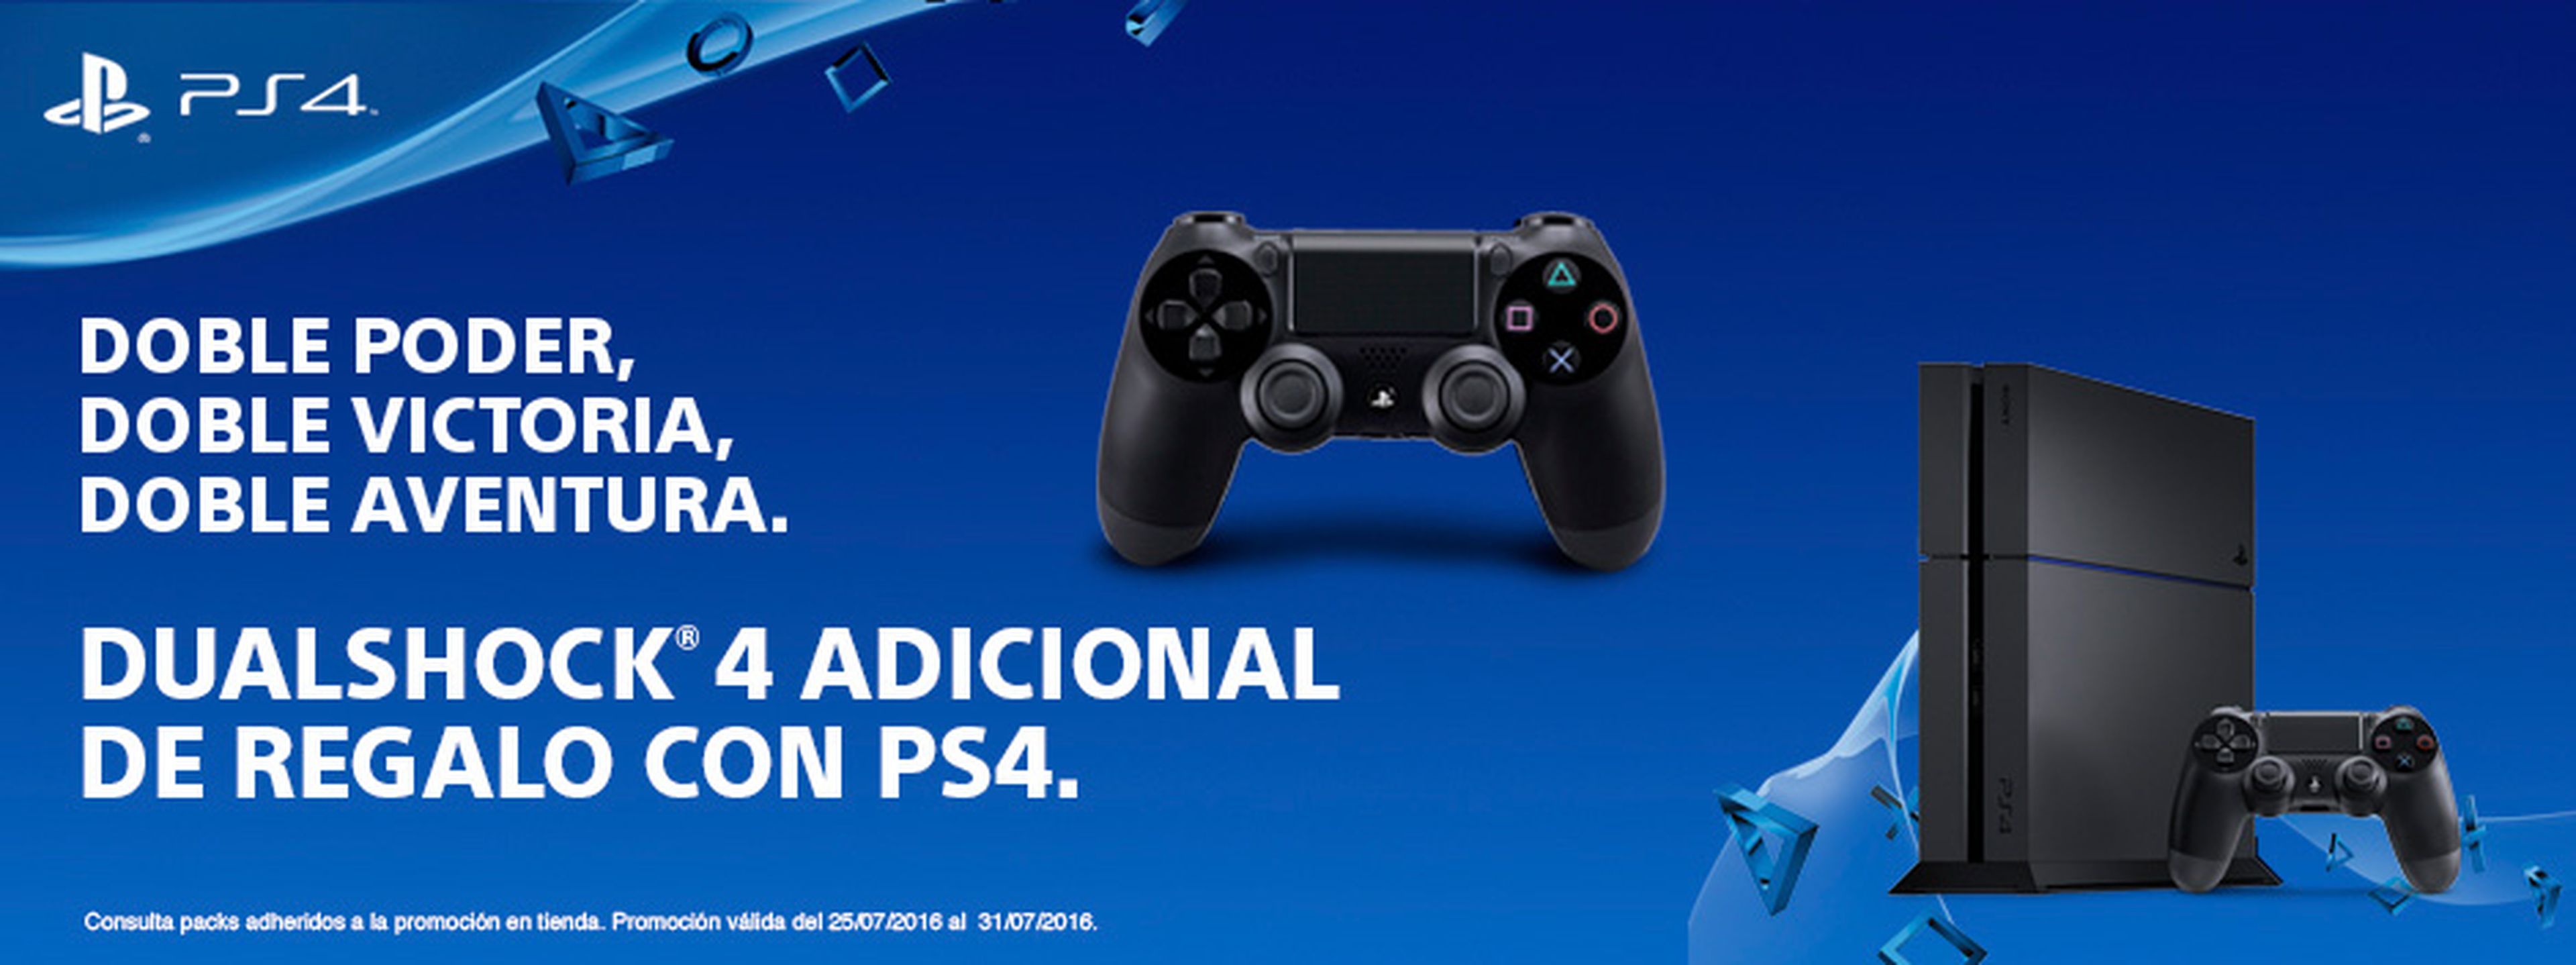 PS4 promoción